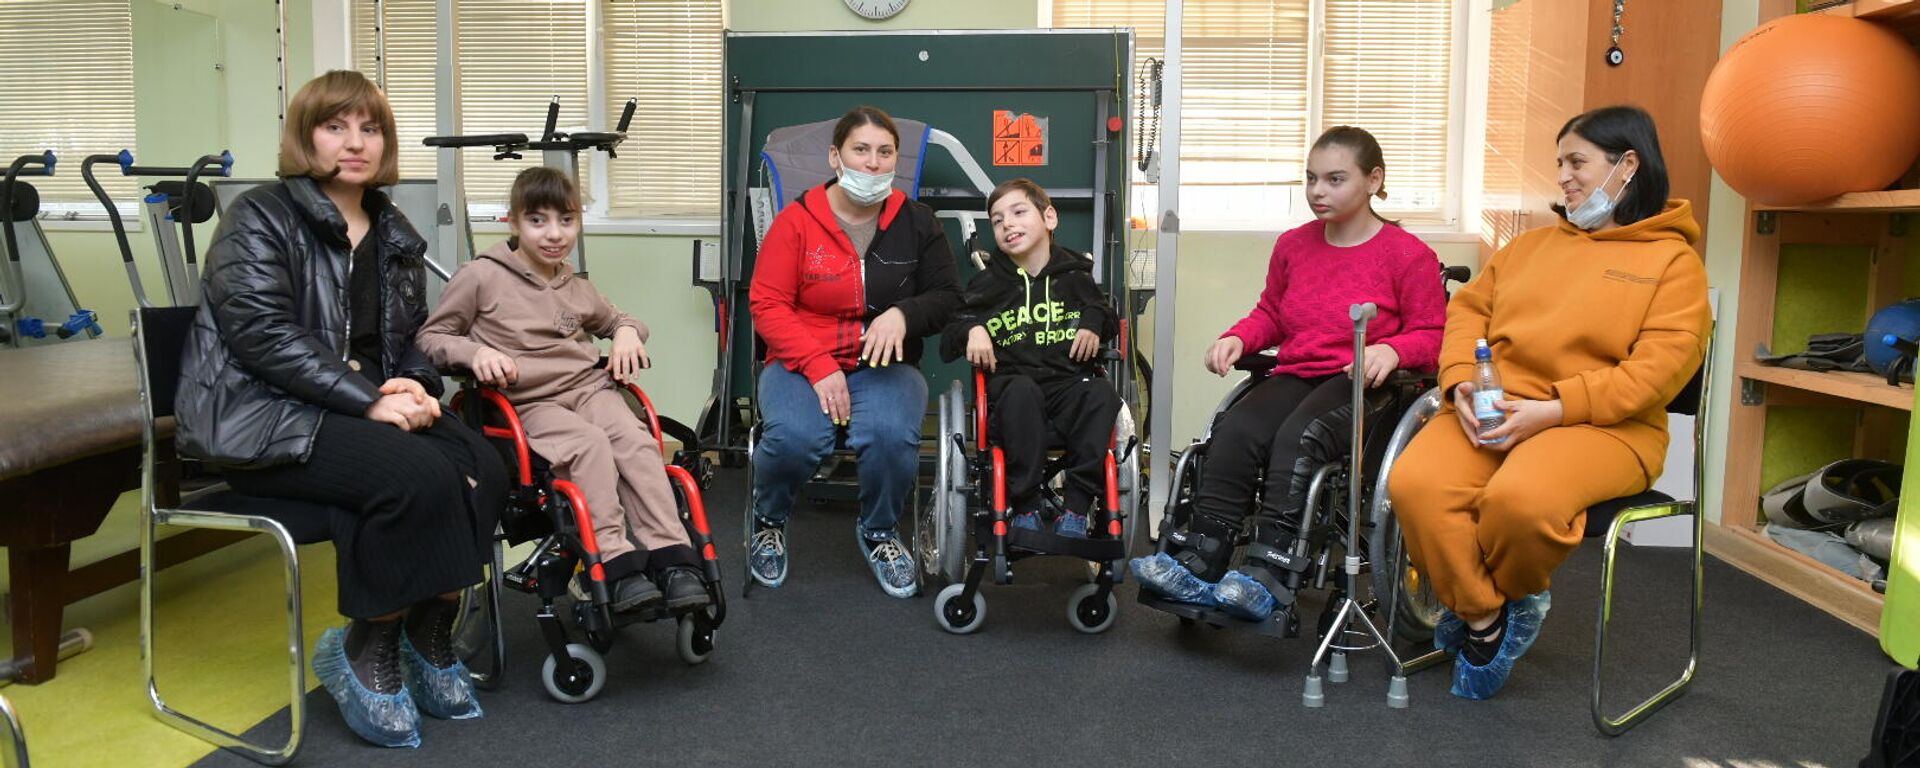 Благотворительный фонд Ашана передает инвалидные коляски  - Sputnik Абхазия, 1920, 16.12.2021